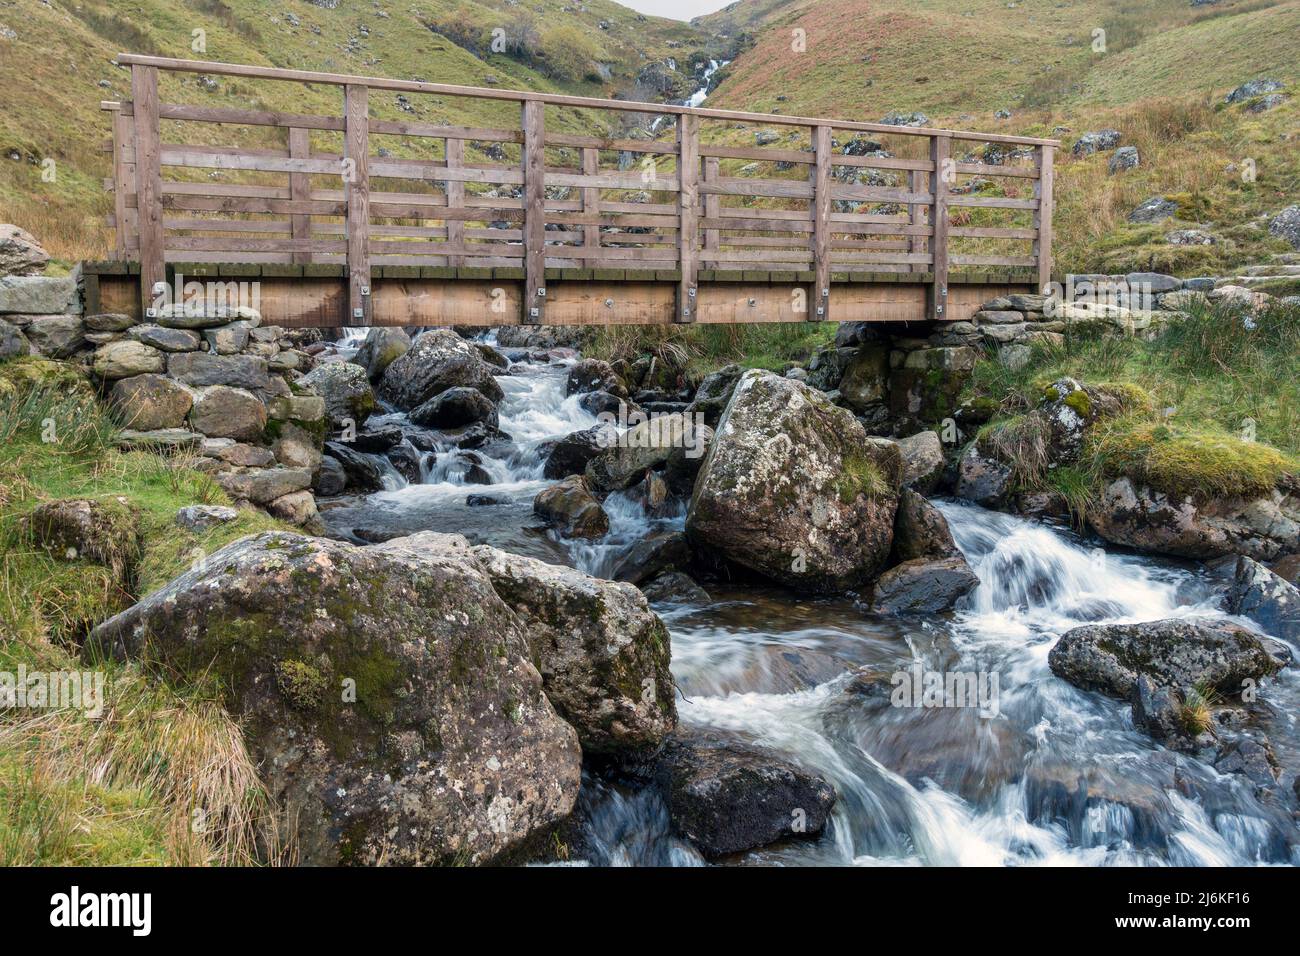 Puente peatonal de madera sobre el río Red Tarn Beck, un arroyo de montaña que se tambalea por debajo de Helvellyn, Glenridding, English Lake District, Cumbria, Reino Unido Foto de stock